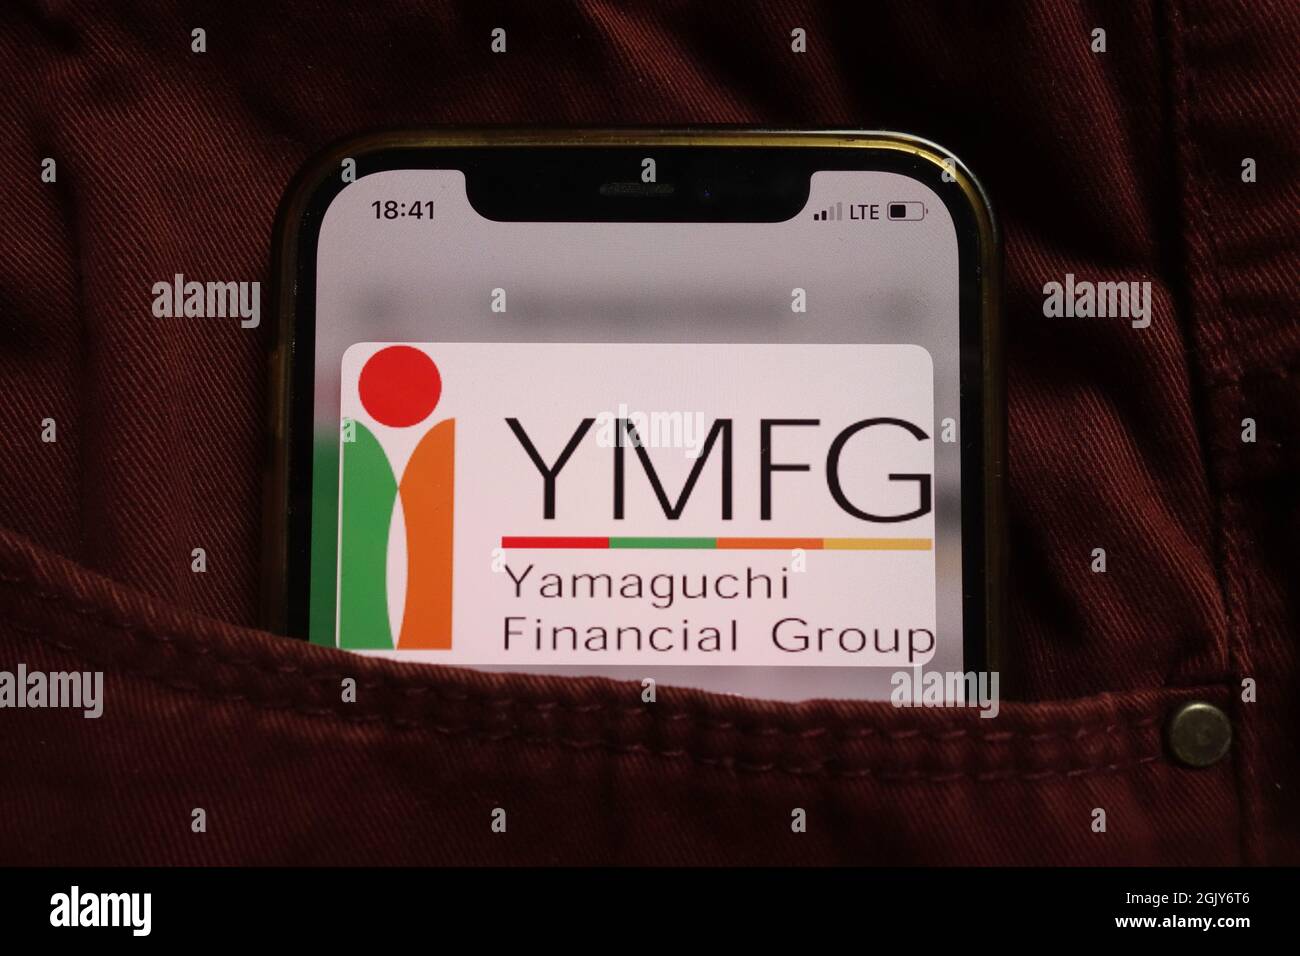 KONSKIE, POLEN - 04. September 2021: Yamaguchi Financial Group-Logo auf dem Mobiltelefon, versteckt in der Jeanentasche Stockfoto